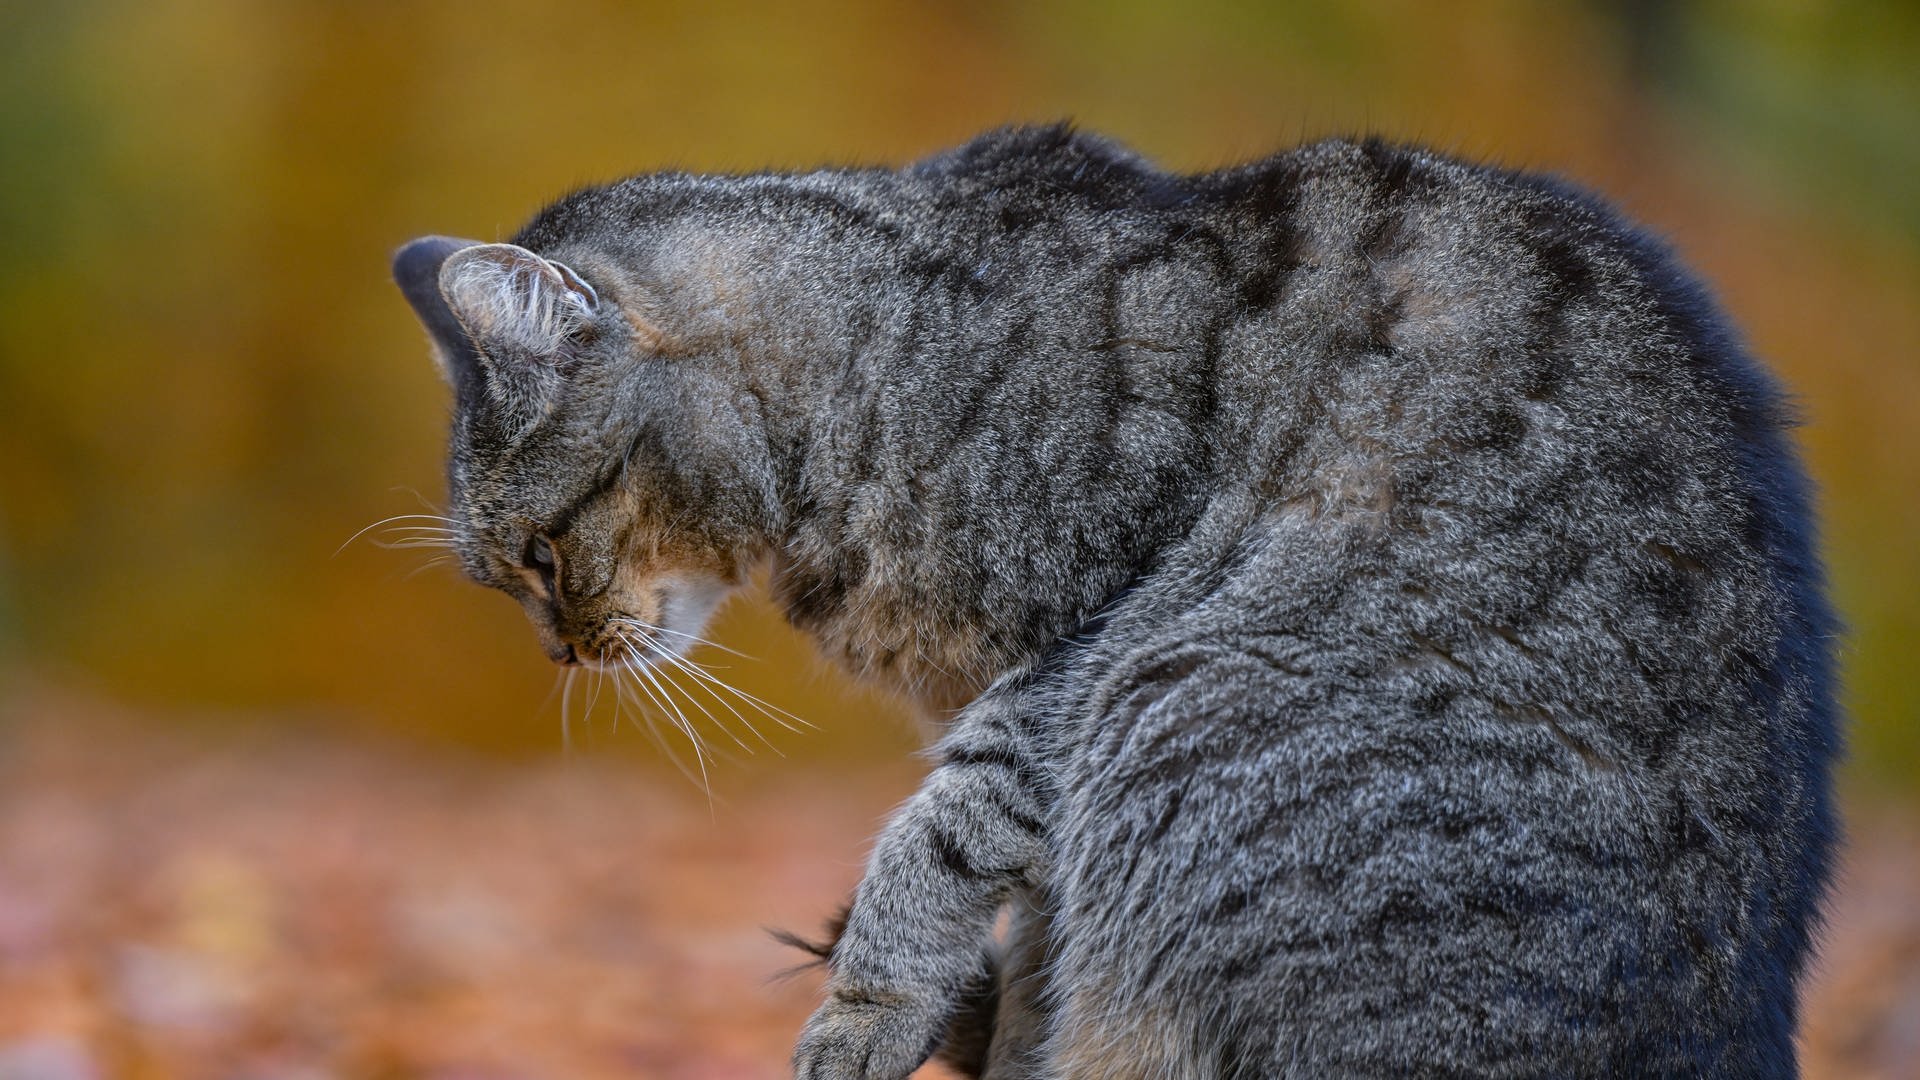 Erneut Katze verstümmelt: Waschbär oder Serientäter?